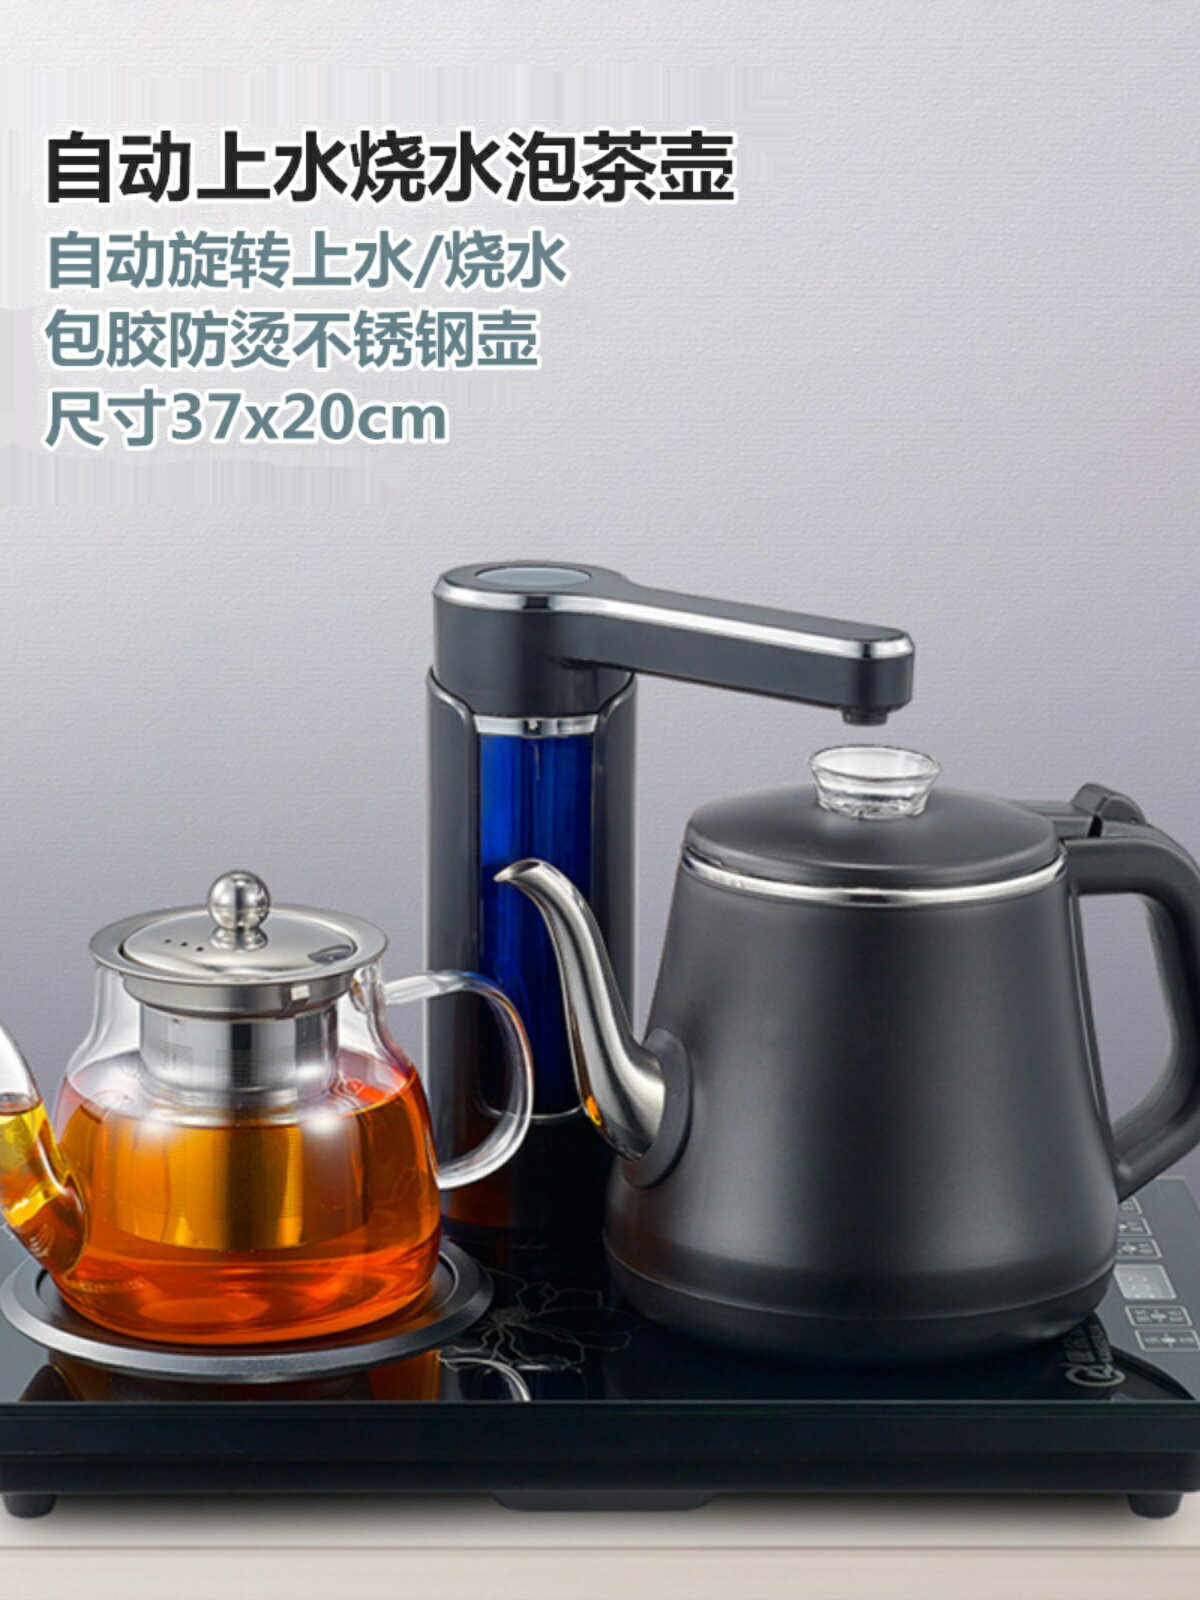 110V自動上水吸水式電熱水壺抽水器電茶壺燒水壺泡茶具保溫一體機